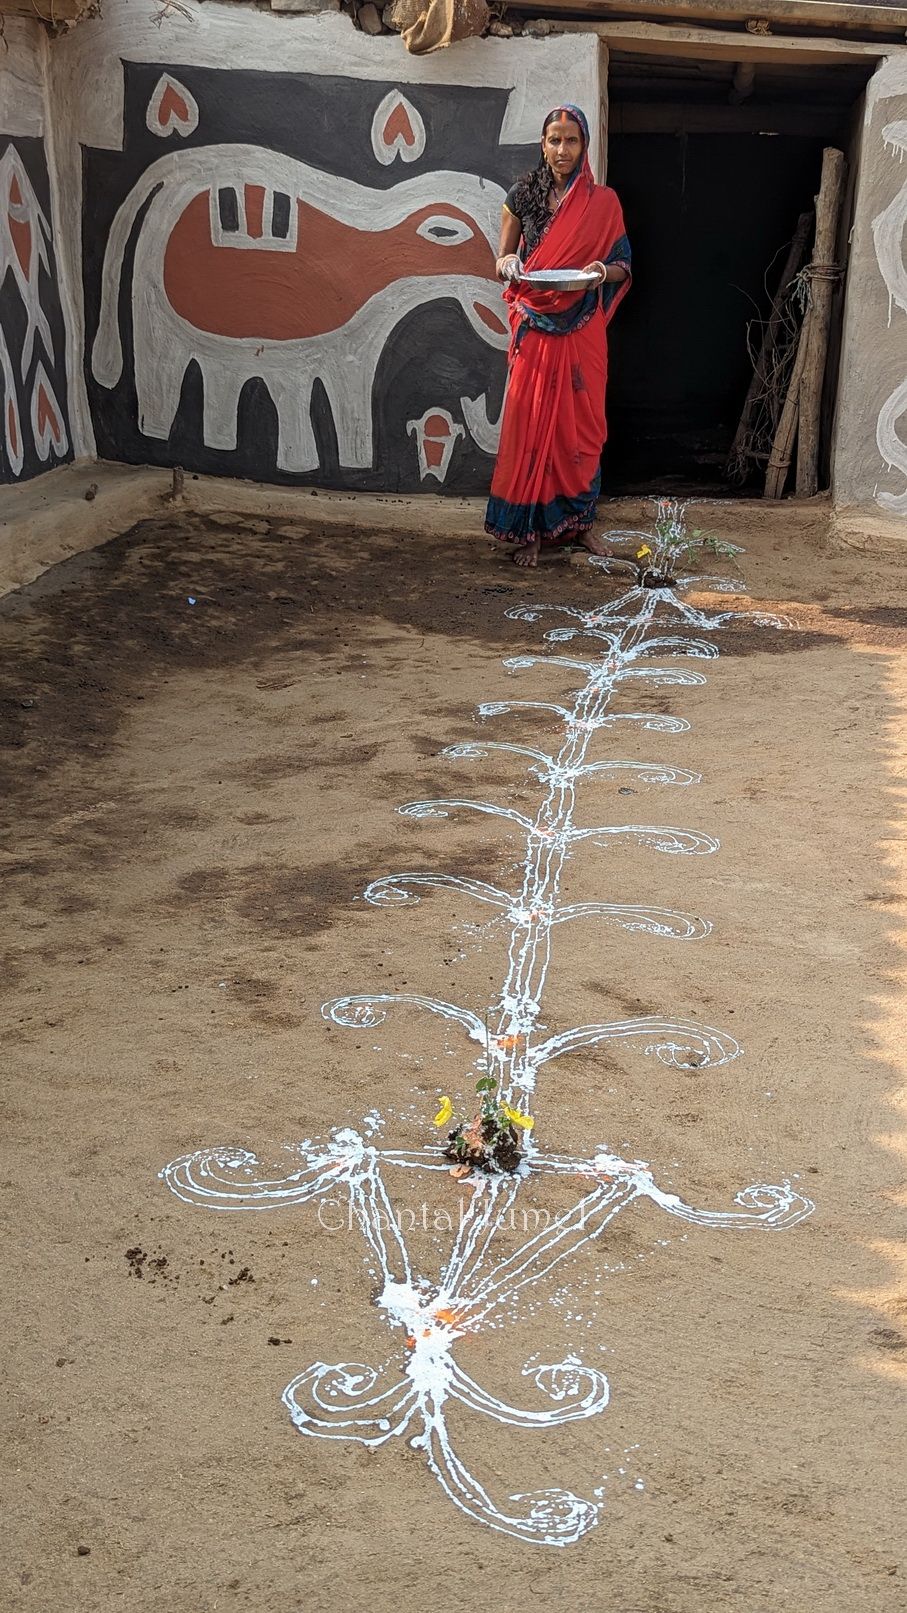 Jharkhand, fête agricole de Sohrai, "Peindre des aripan pour accueillir le bétail" — partie 5